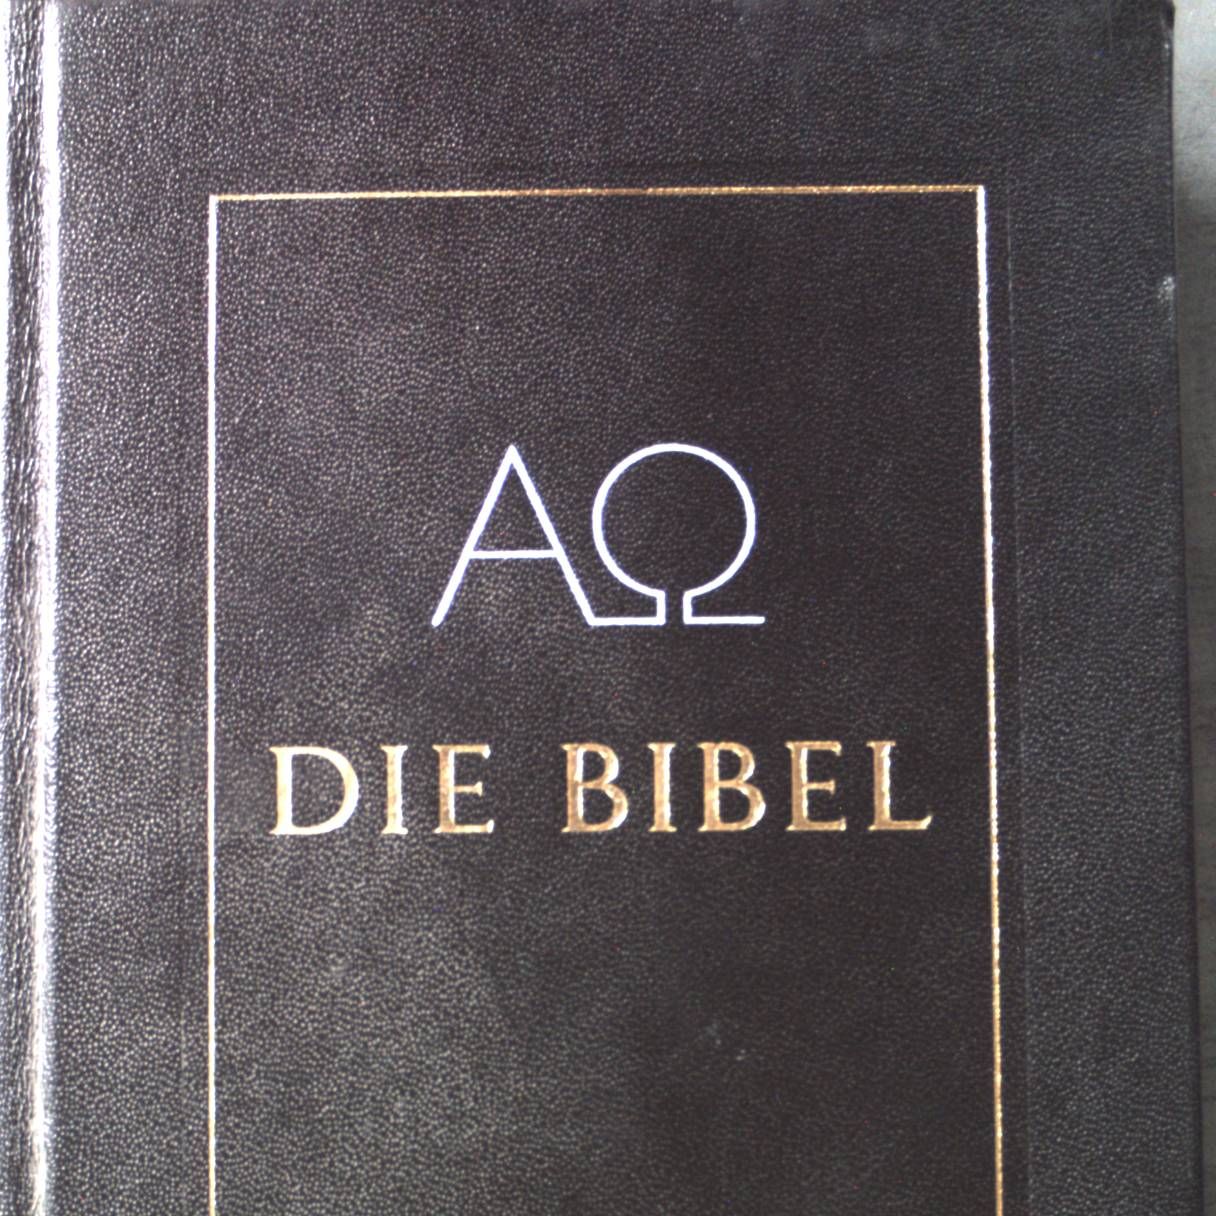 Die Bibel : die Heilige Schrift des Alten und Neuen Bundes